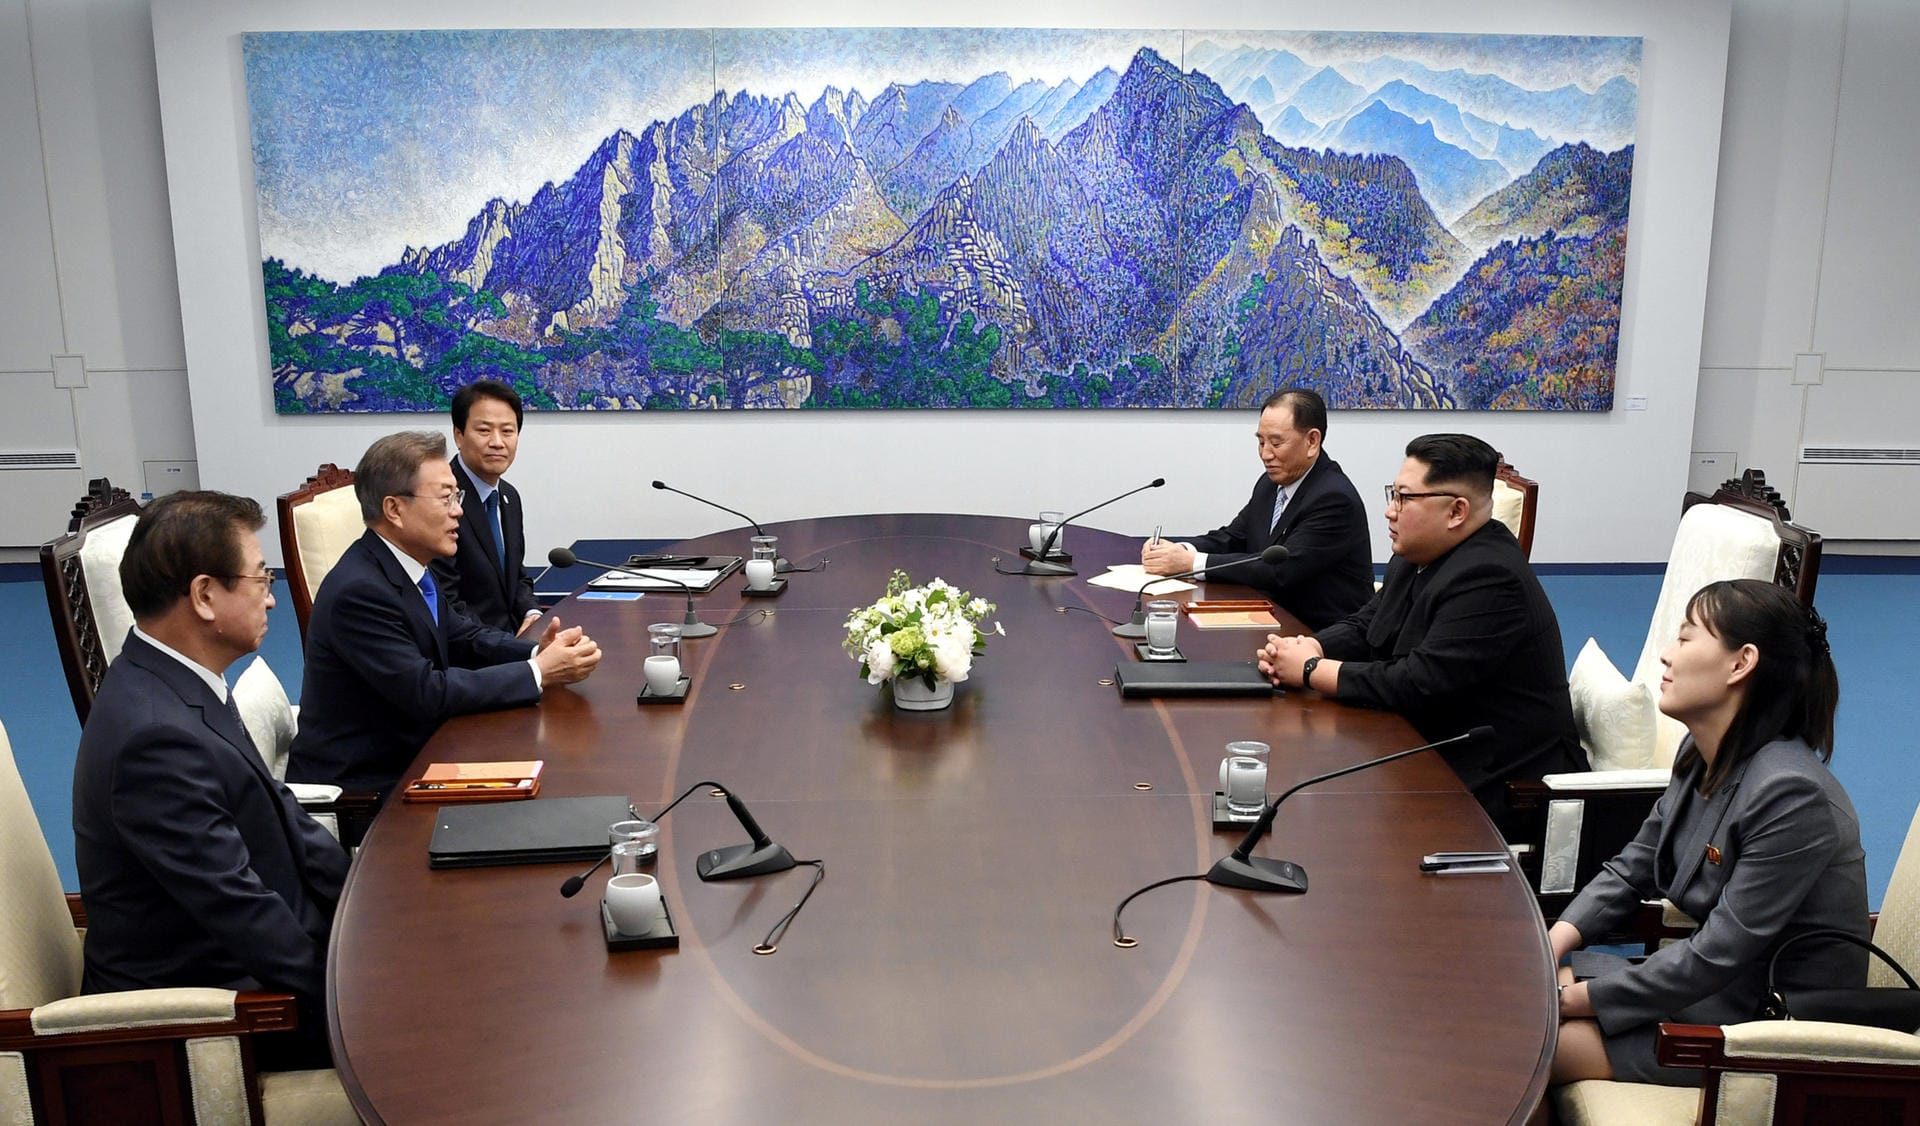 Bei dem Treffen zwischen Moon und Kim wurde historisches beschlossen. Beide Länder kündigten eine vollständige Denuklearisierung an. Zudem soll über das Ende des Korea-Krieges verhandelt werden. Bislang herrscht zwischen den Staaten lediglich ein Waffenstillstand.